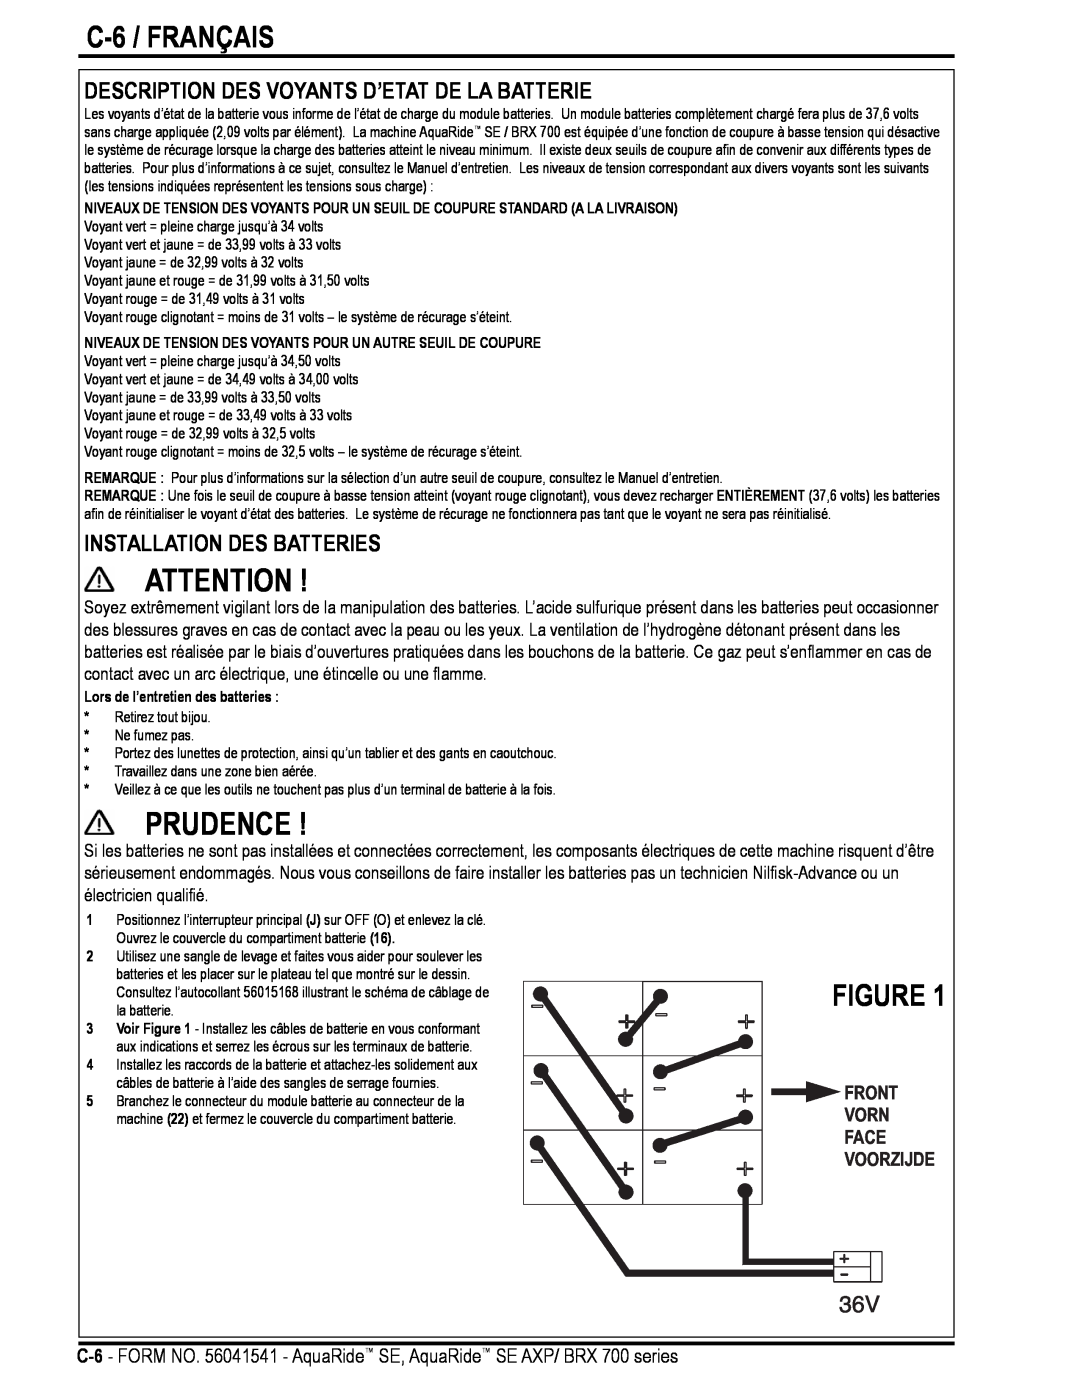 Nilfisk-Advance America BRX 700 Series manual C-6 / FRANÇAIS, Description Des Voyants D’Etat De La Batterie, Prudence 